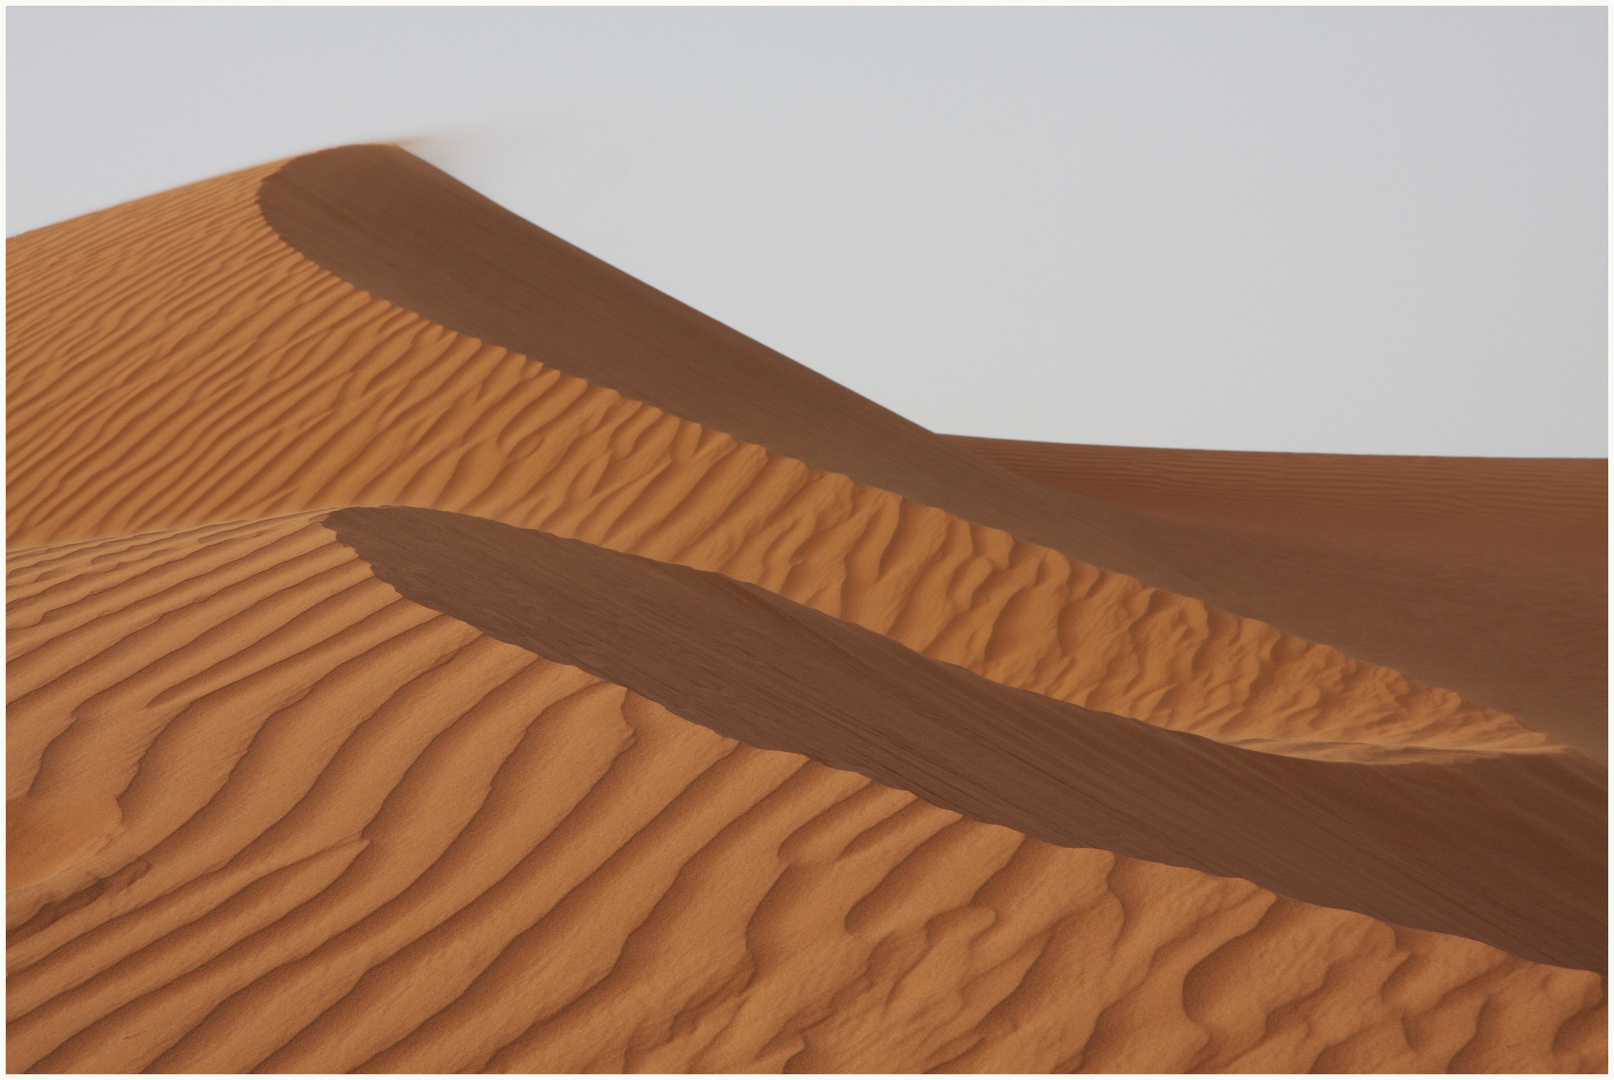 Sand beauty of the Desert